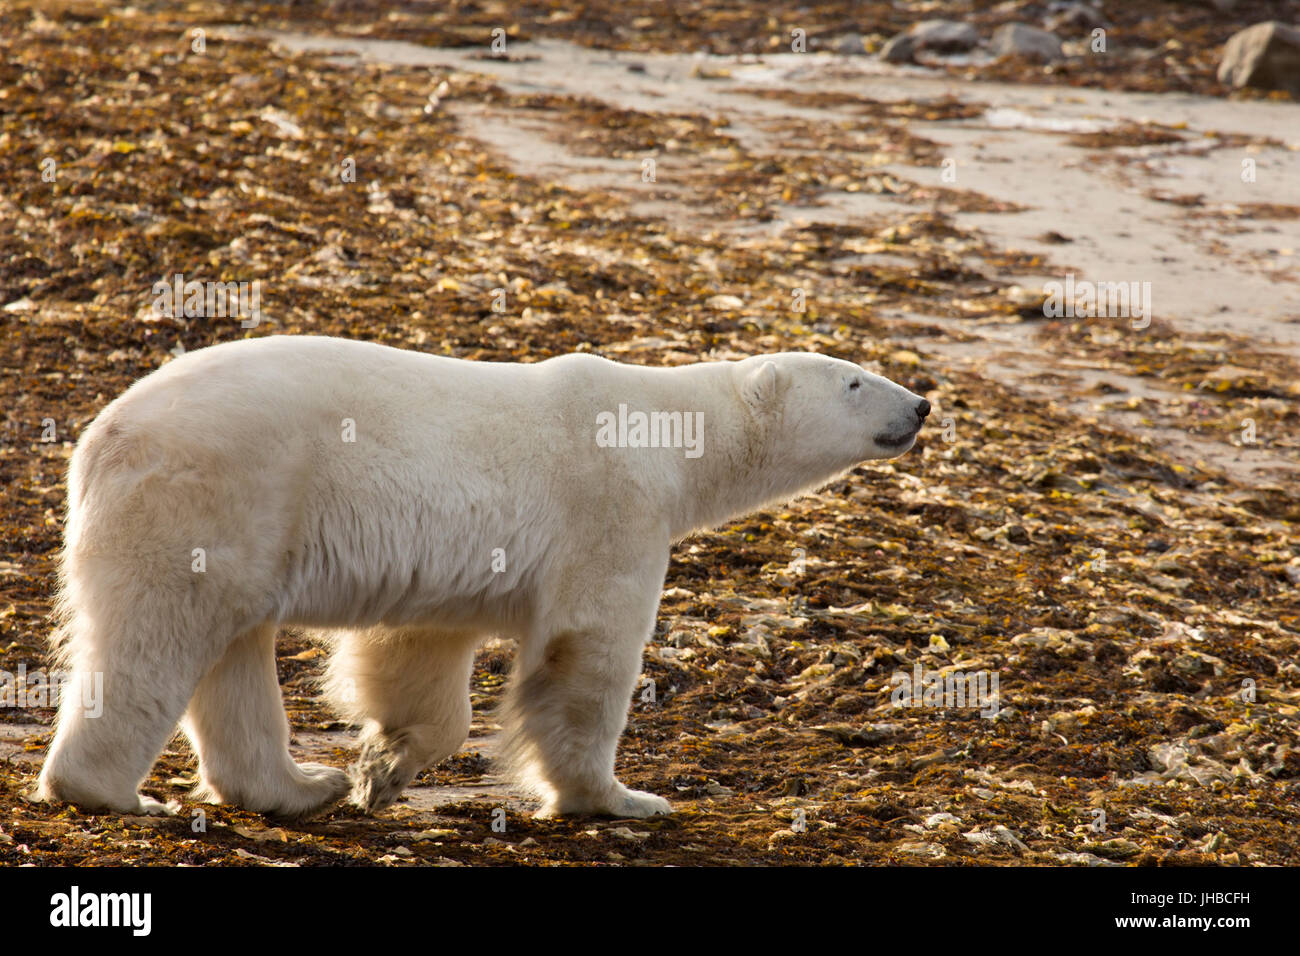 L'ours polaire (Ursus maritimus) sur une plage au Manitoba, Canada. Les ours polaires sont et carnivores vivent dans l'hémisphère nord. Banque D'Images